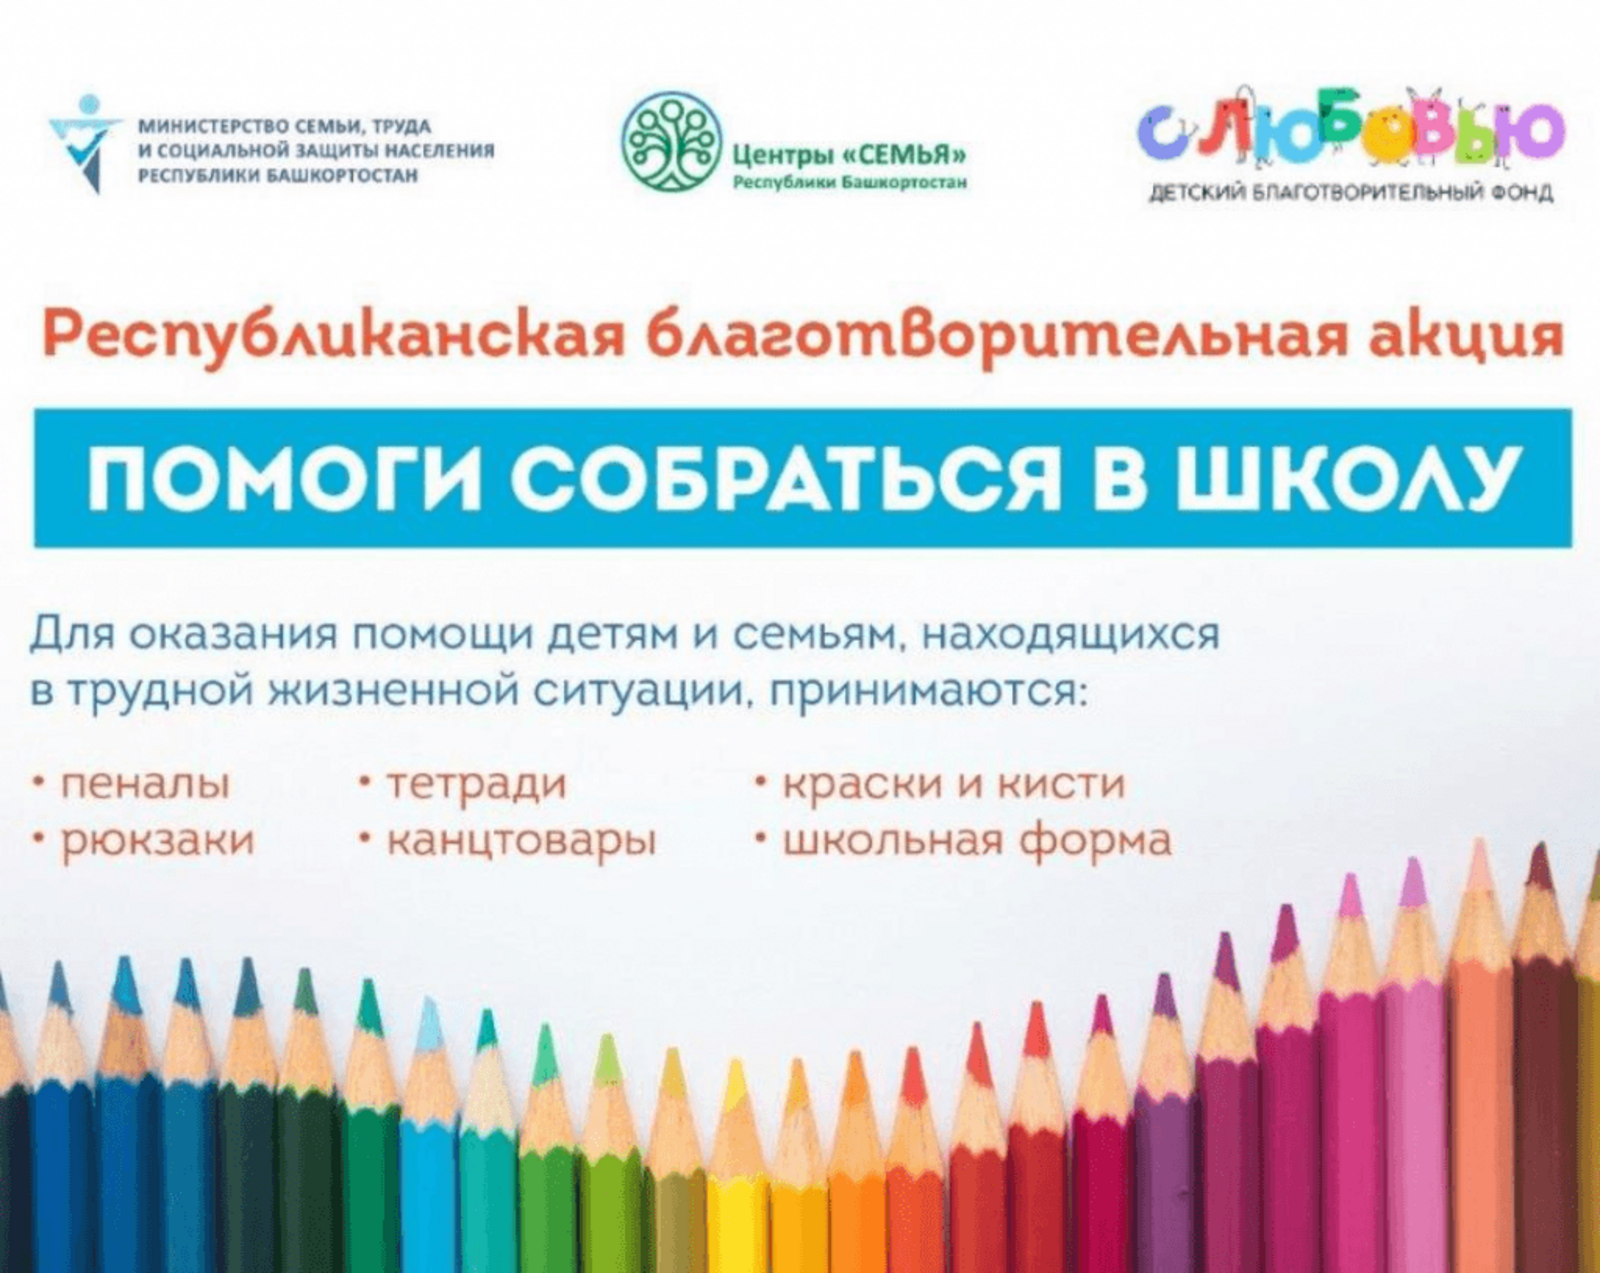 В Башкортостане проходит благотворительная акция “Помоги собраться в школу”